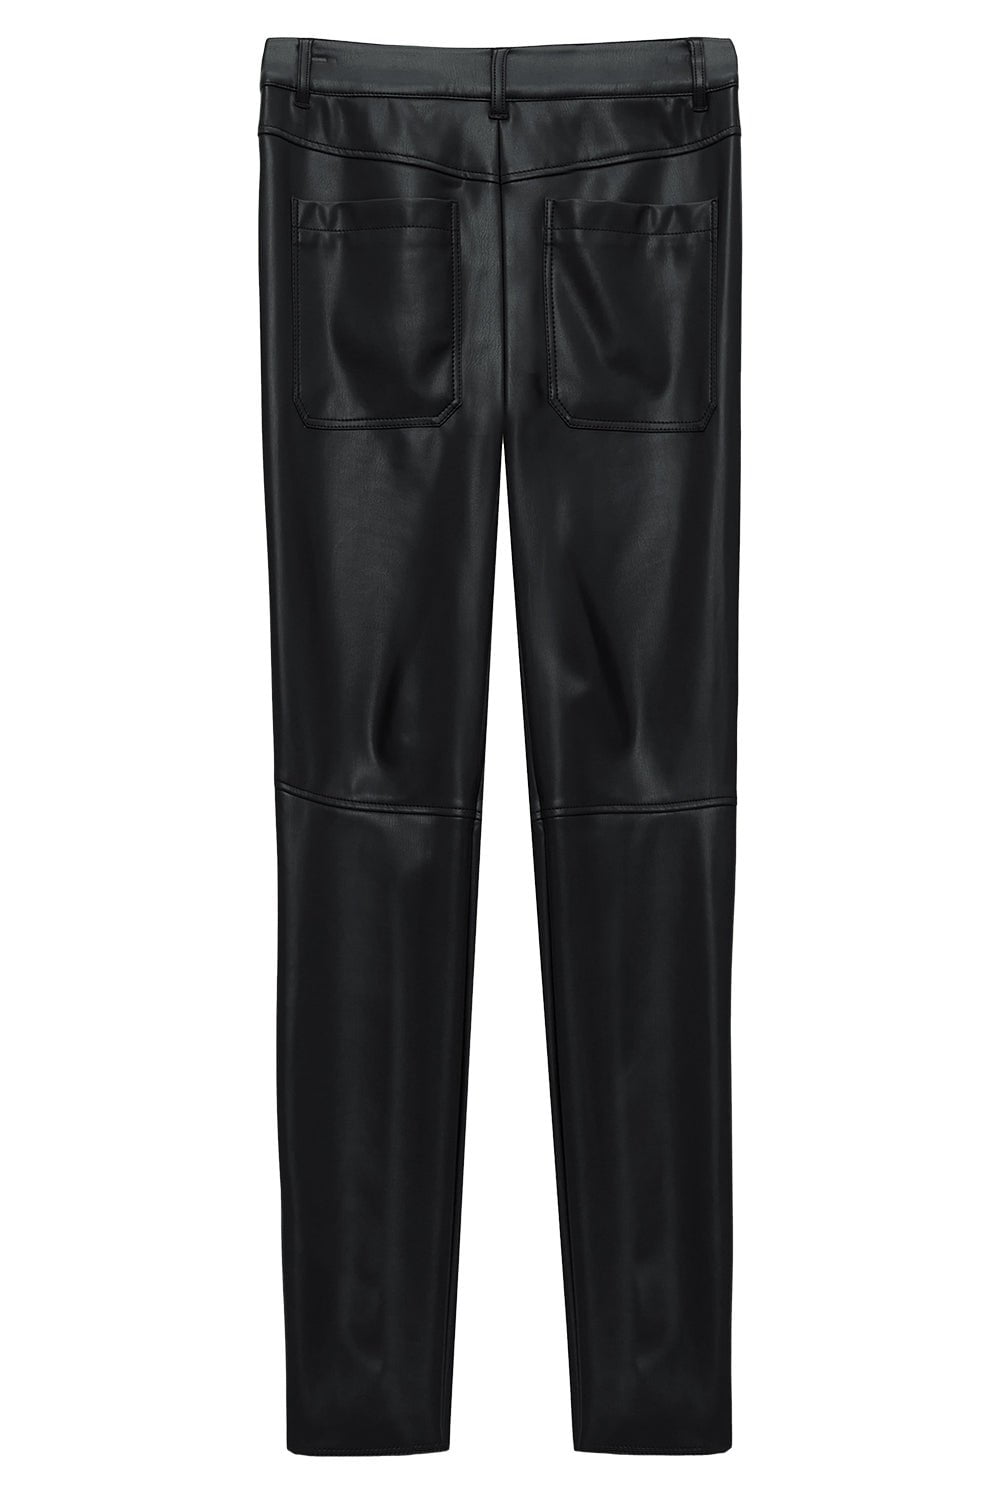 DOROTHEE SCHUMACHER-Sleek Comfort Pants-